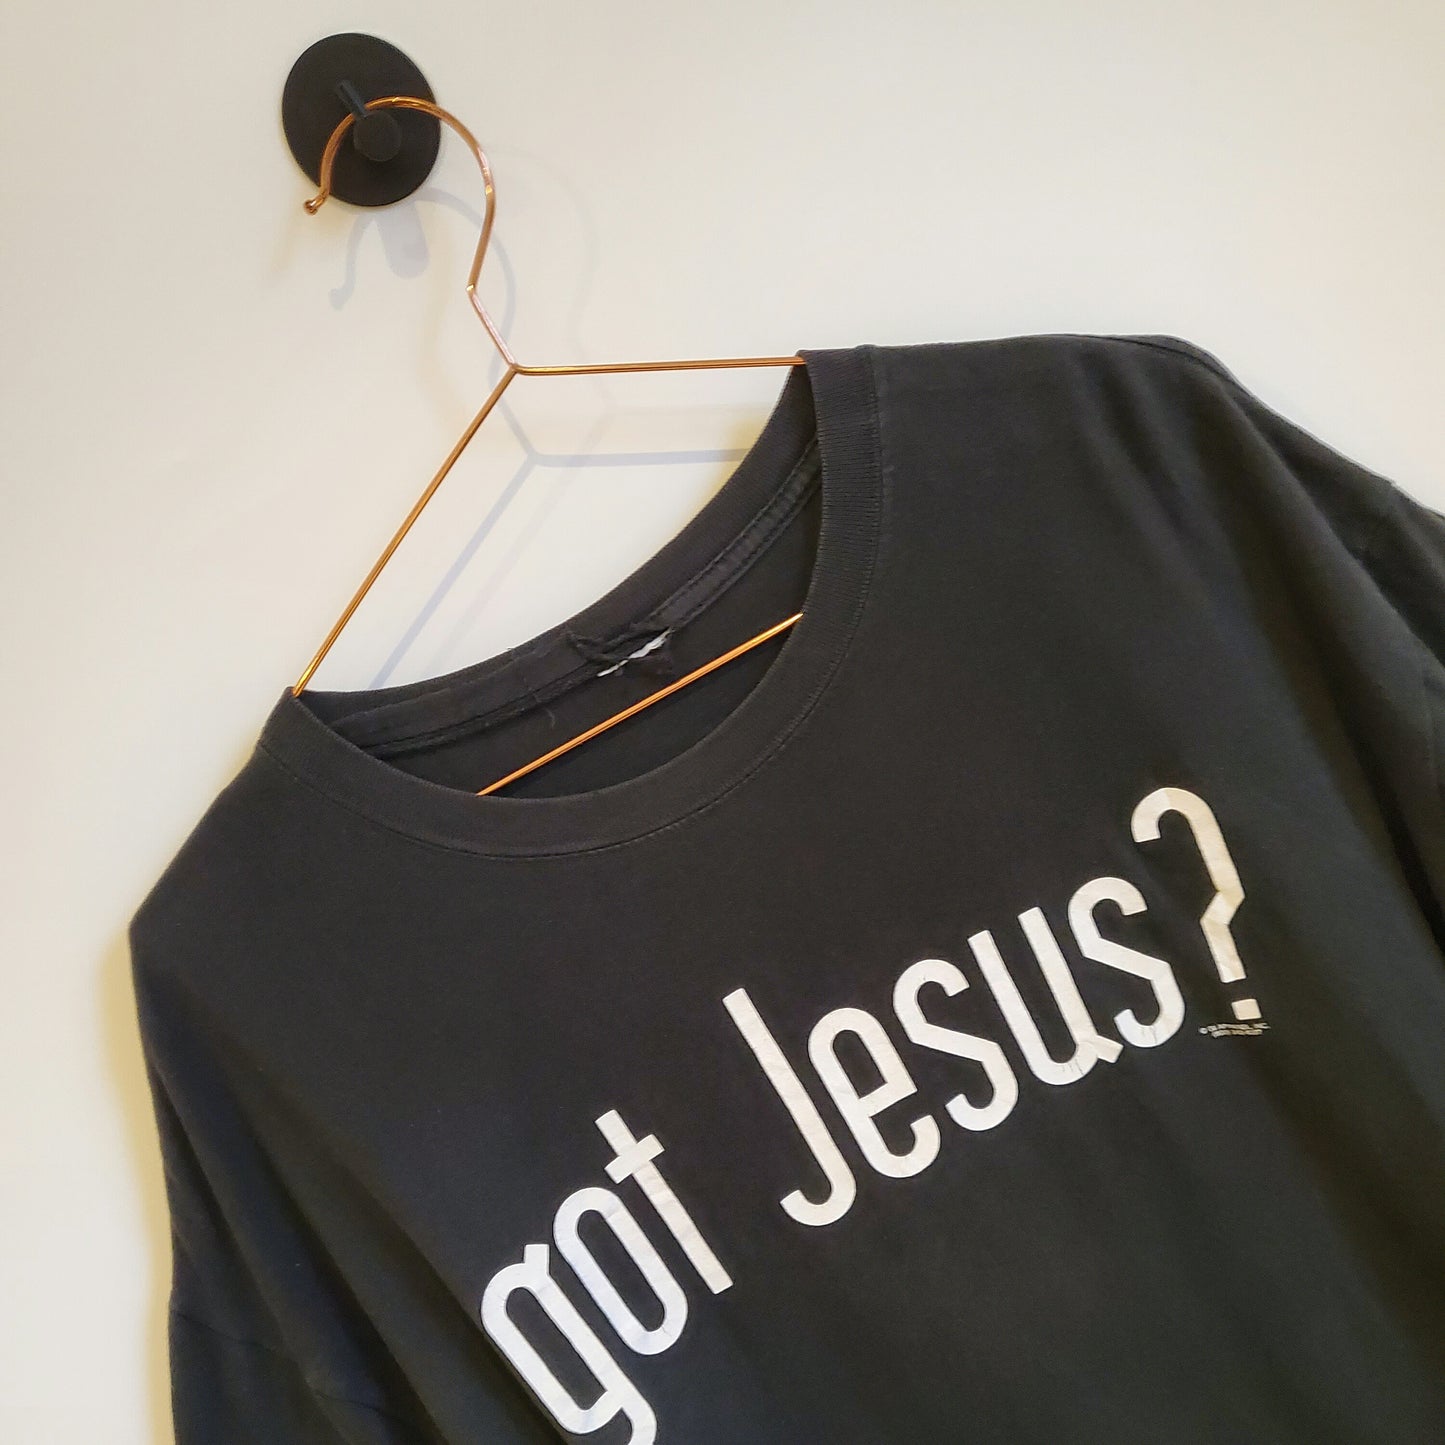 Vintage 90's Got Jesus? Slogan Graphic T-shirt | Size L